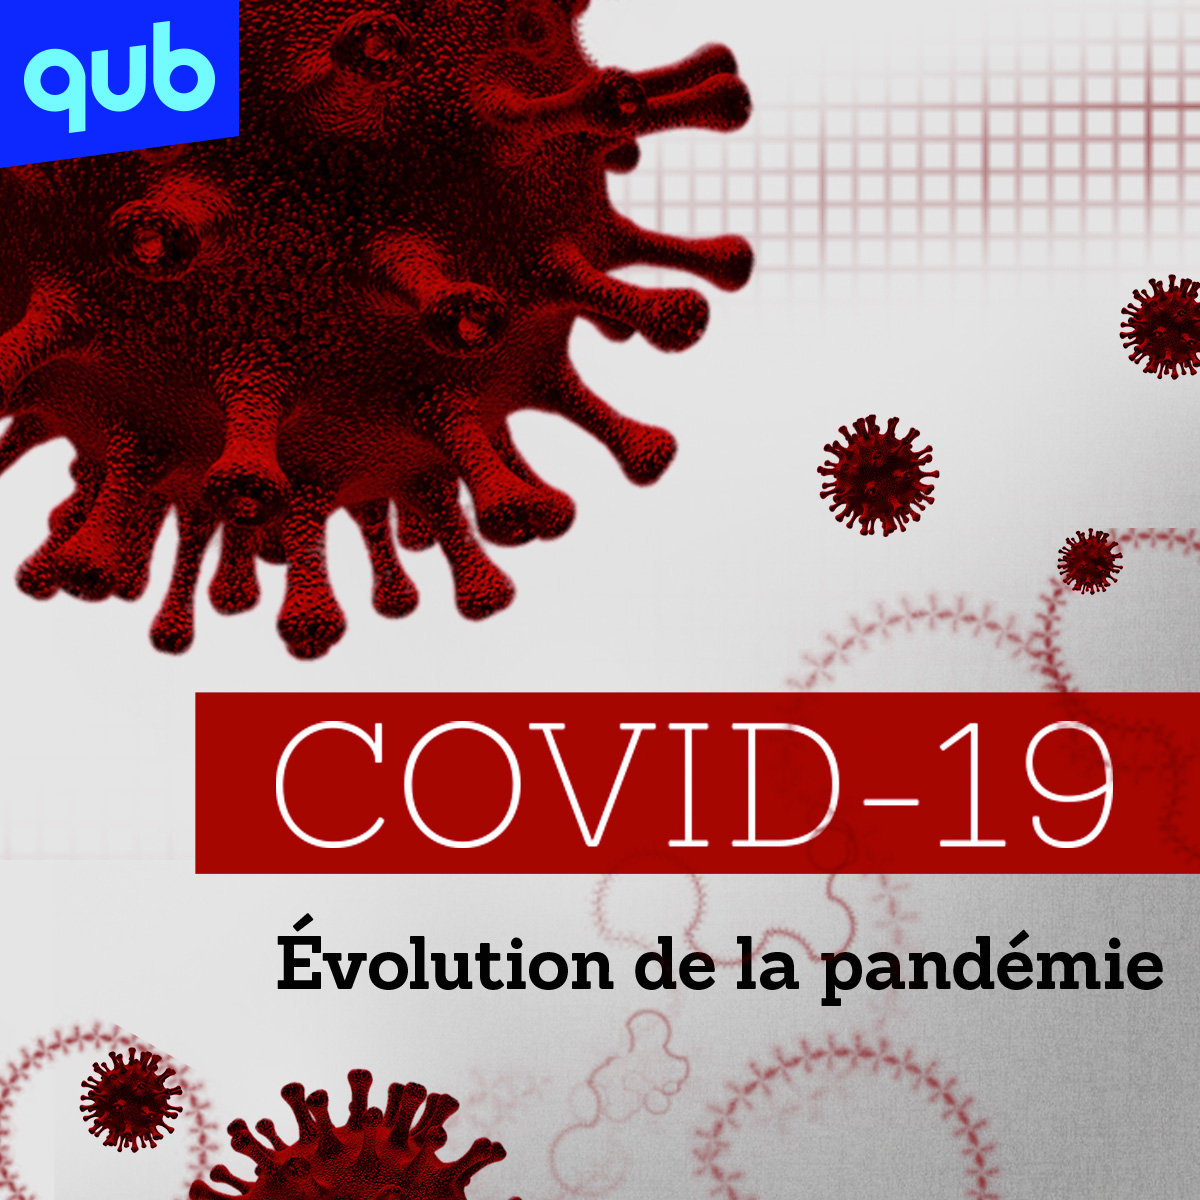 COVID-19 : «On a baissé la garde complètement», dit le virologue Jacques Lapierre